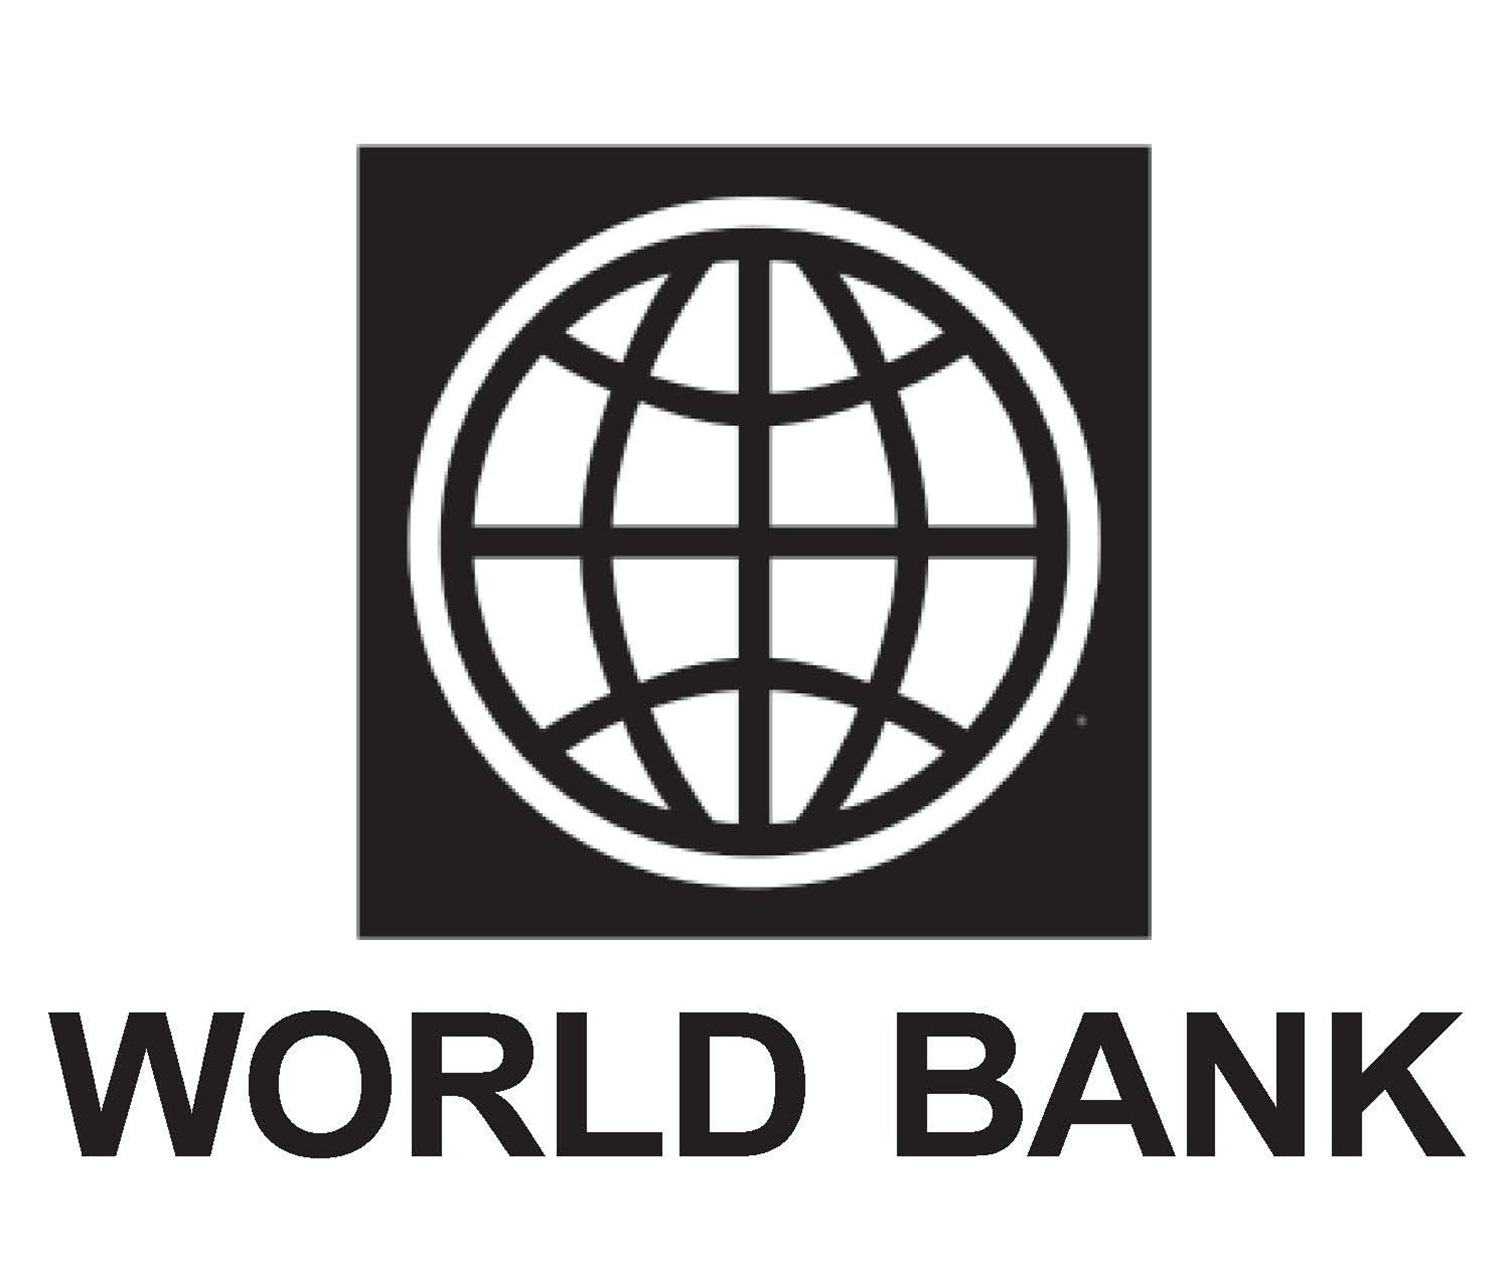 Фонд всемирный банк. Всемирный банк. Значок Всемирного банка. Группа Всемирного банка логотип. Логотипы Мировых банков.